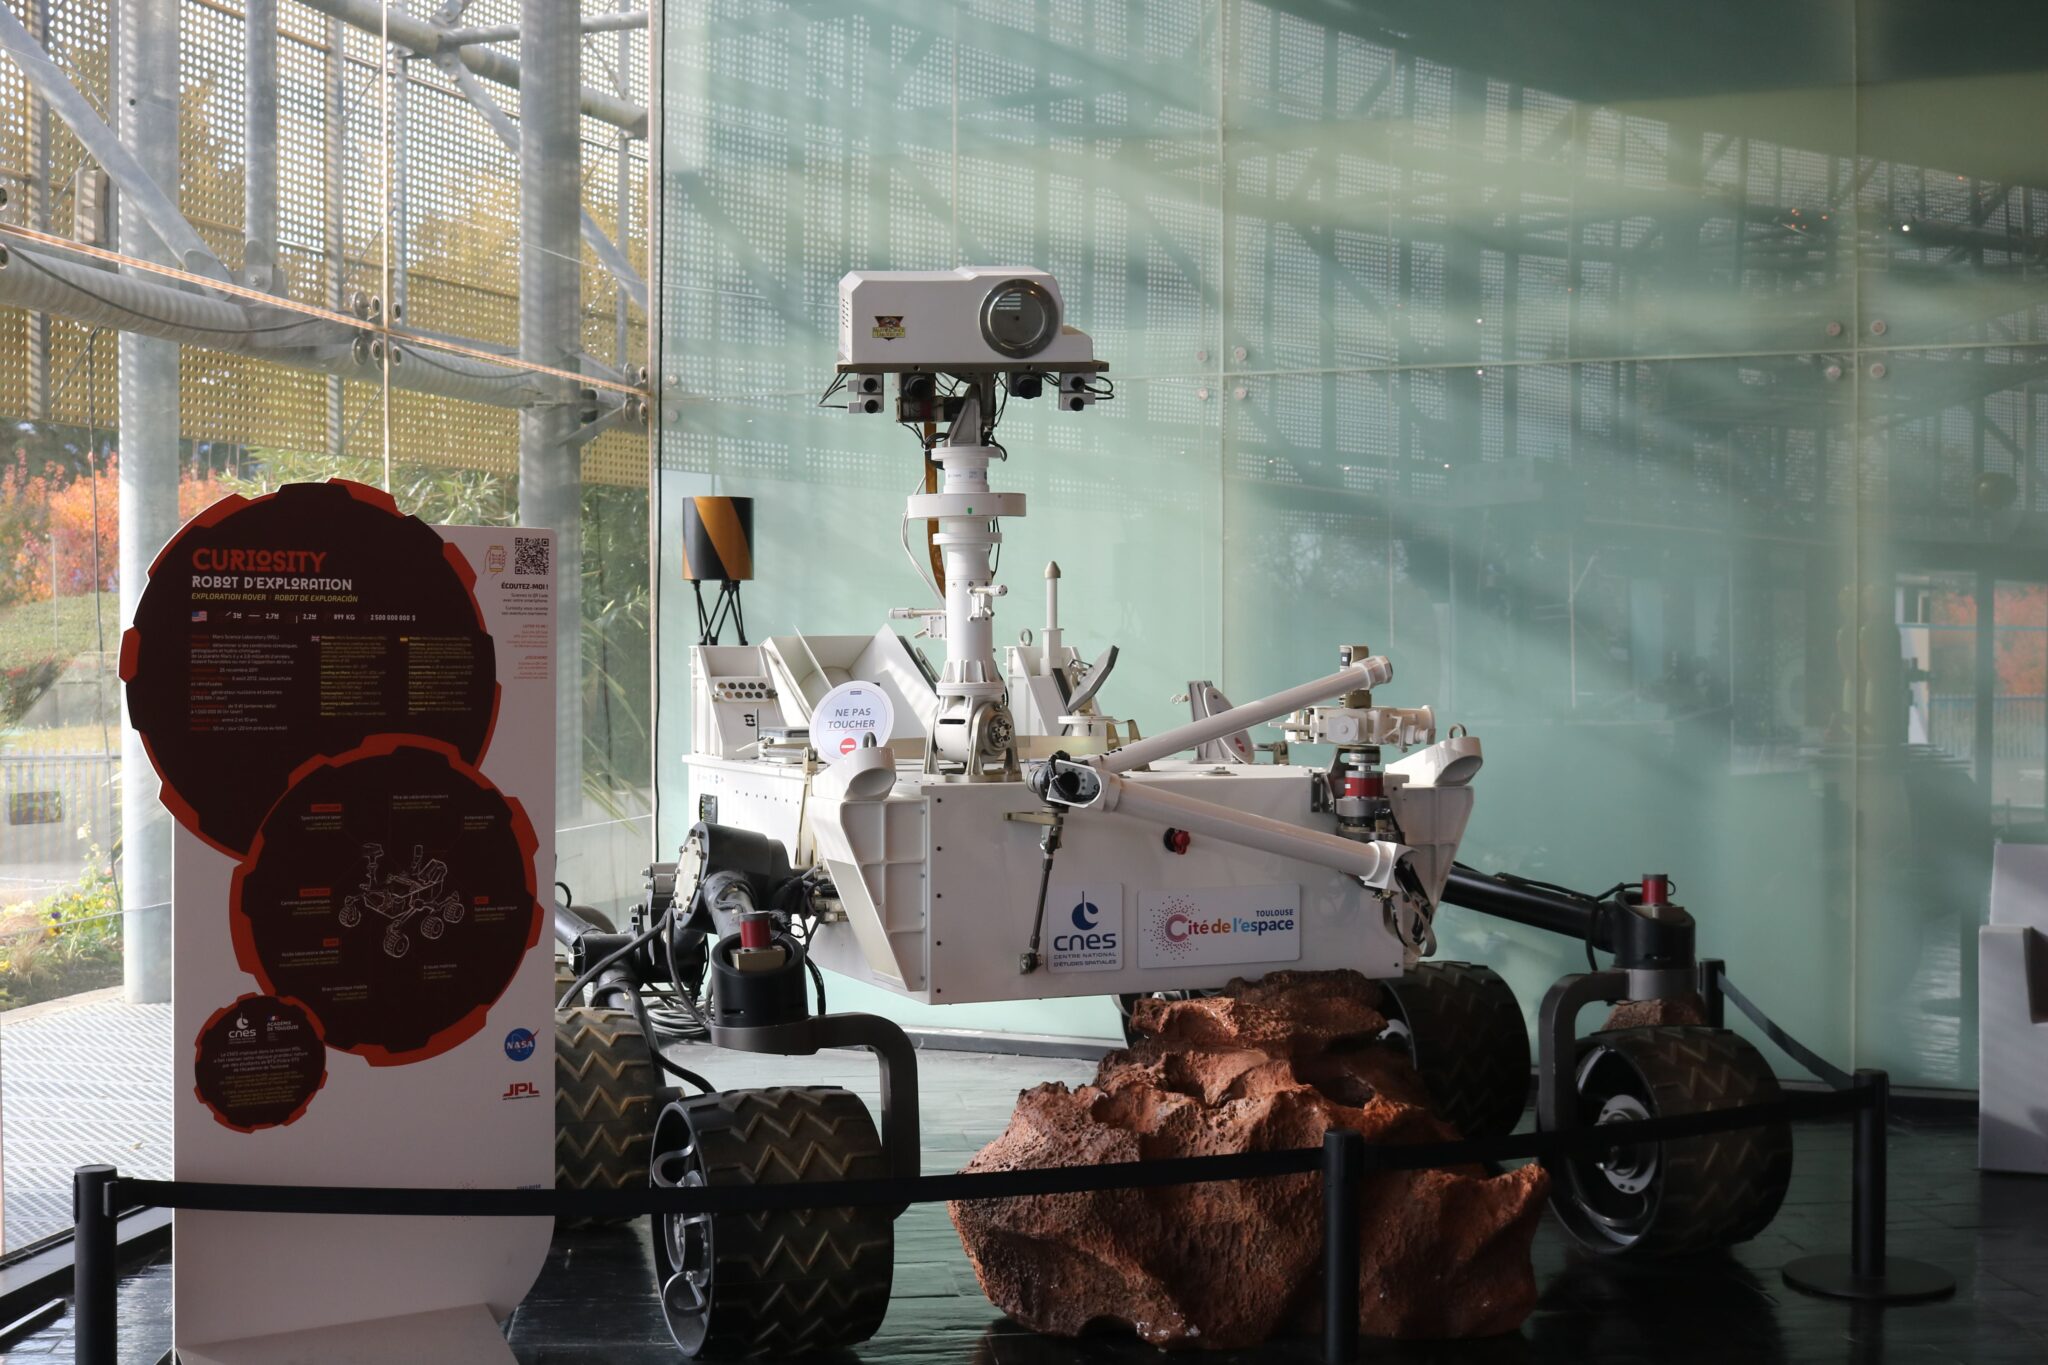 De nombreux rovers, tels que Perseverance ou Curiosity (photo), ont été envoyés sur Mars dans le cadre de missions spatiales. En attendant de pouvoir envoyer des spationautes sur la planète, ces robots sont chargés d’étudier les caractéristiques du sol martien et de transmettre des données aux équipes de scientifiques sur Terre.